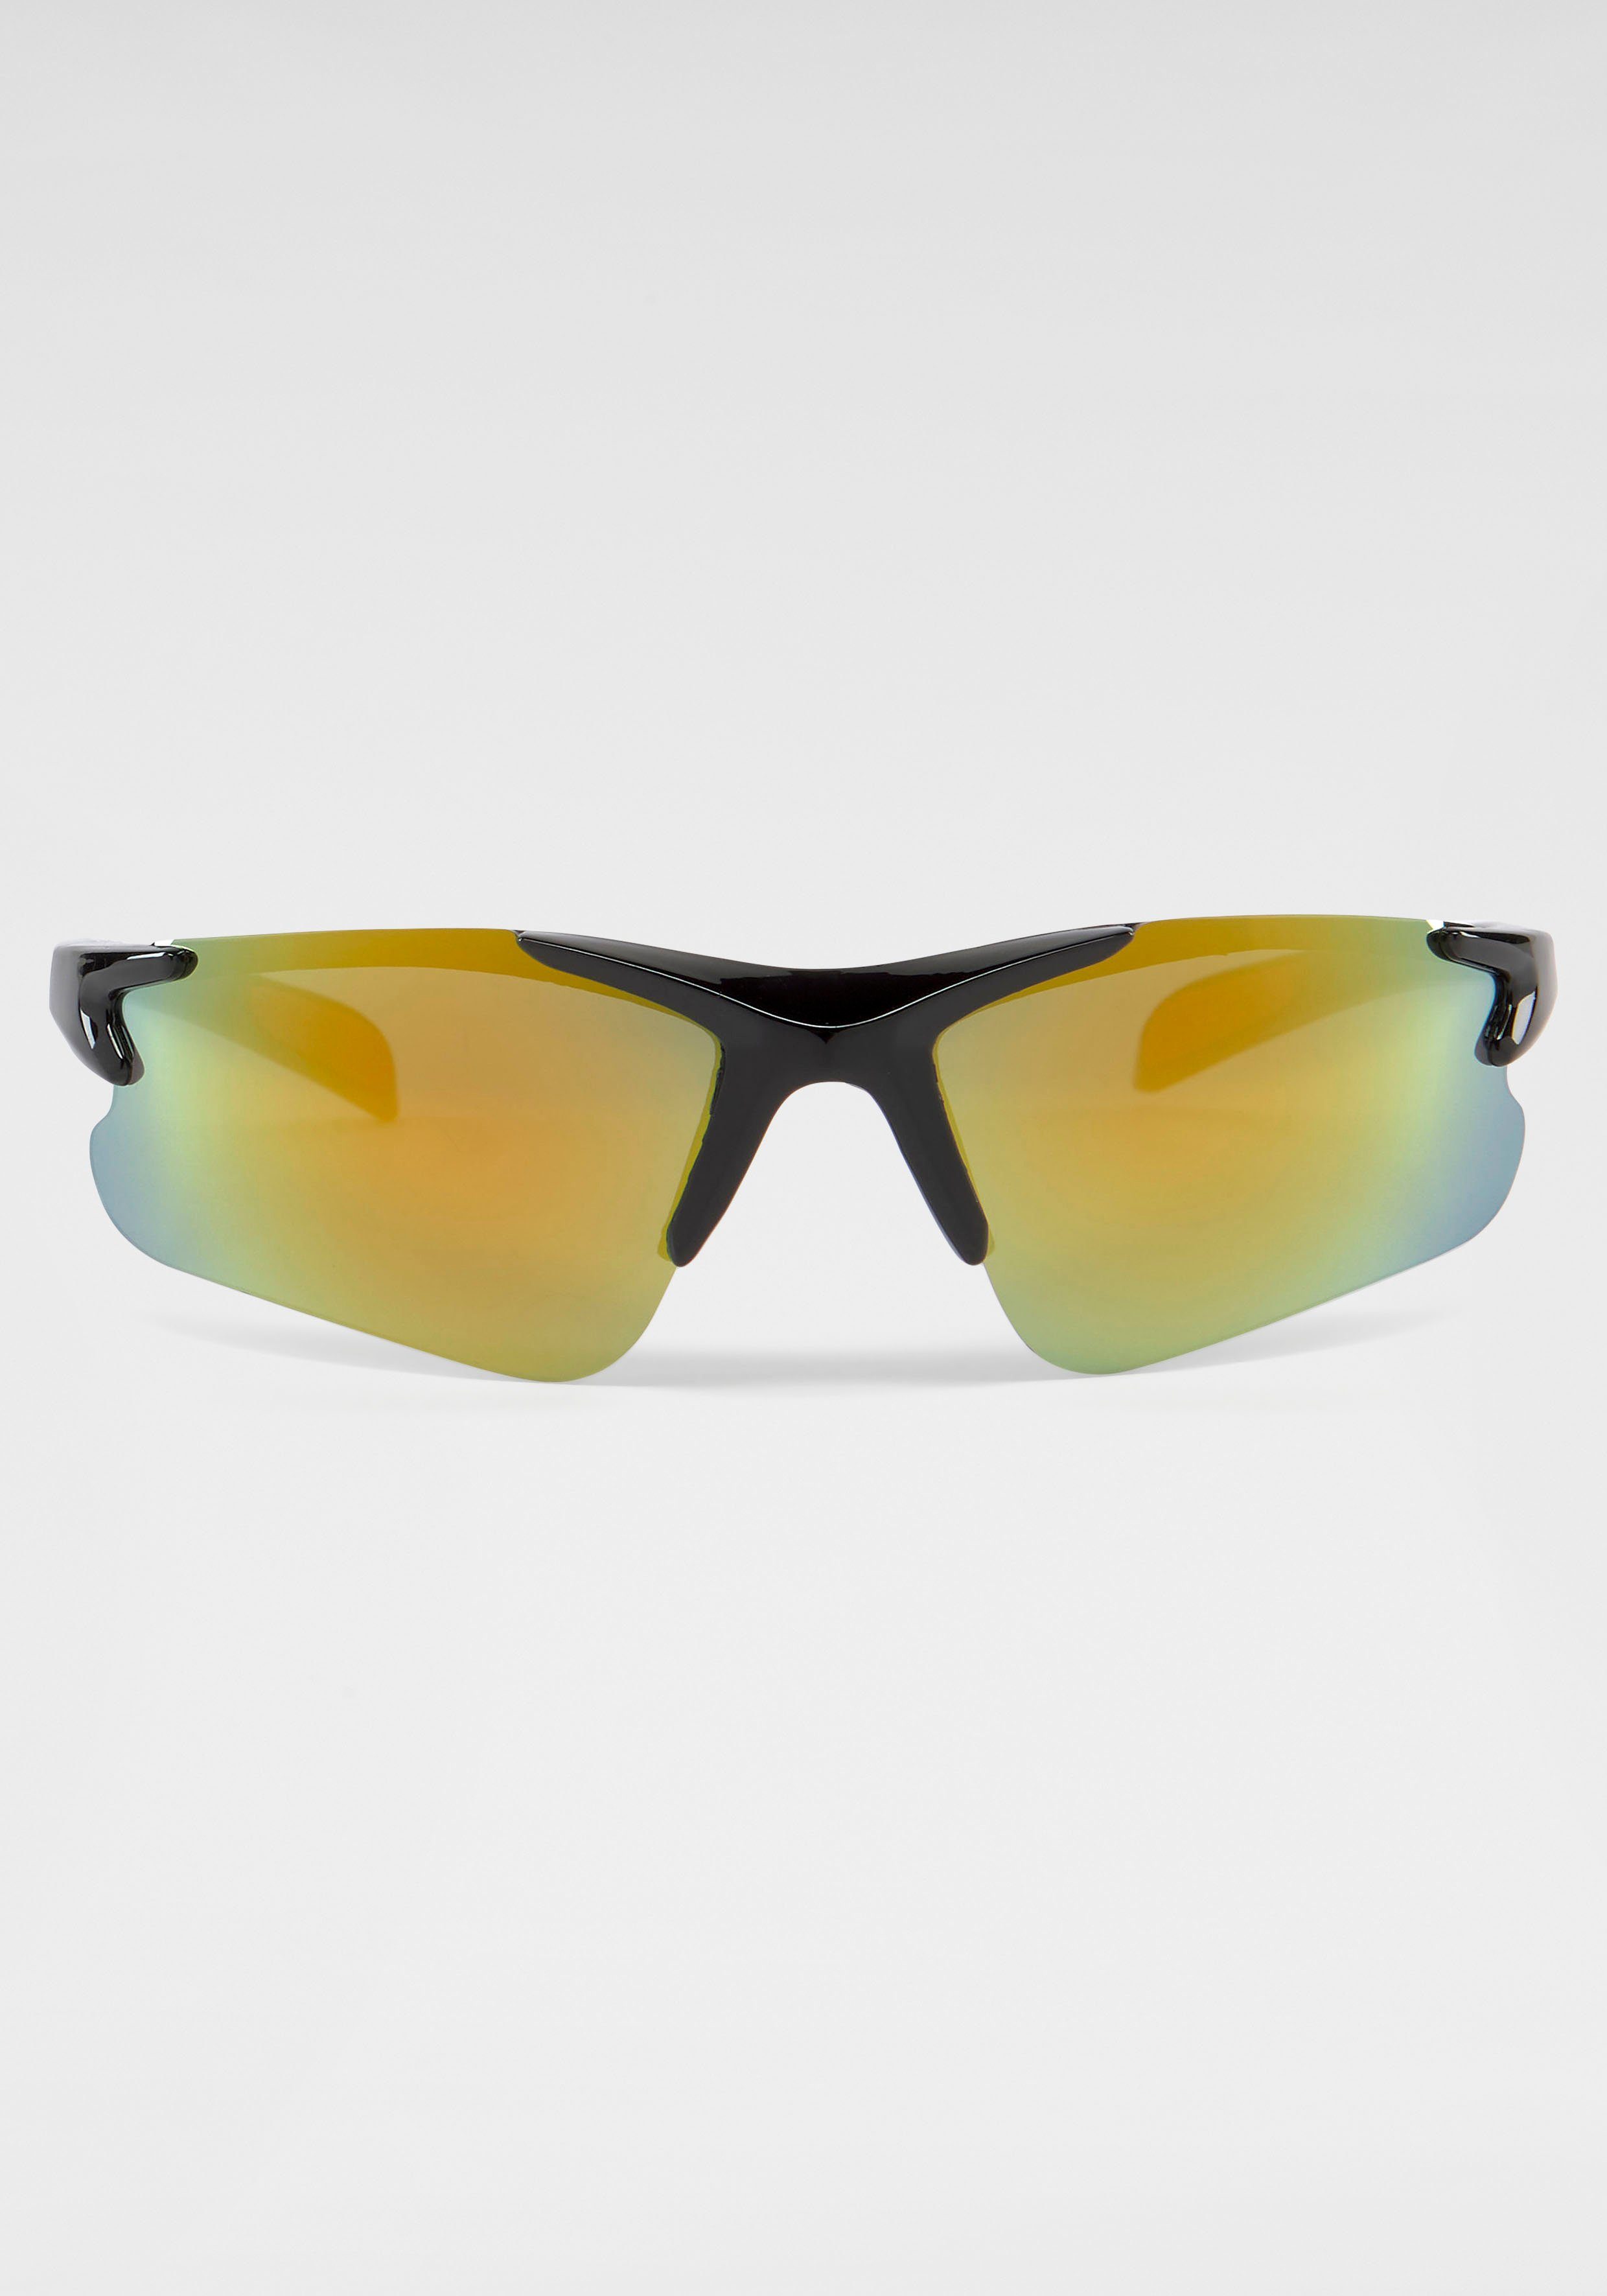 PRIMETTA Eyewear Sonnenbrille verspiegelten mit Gläsern